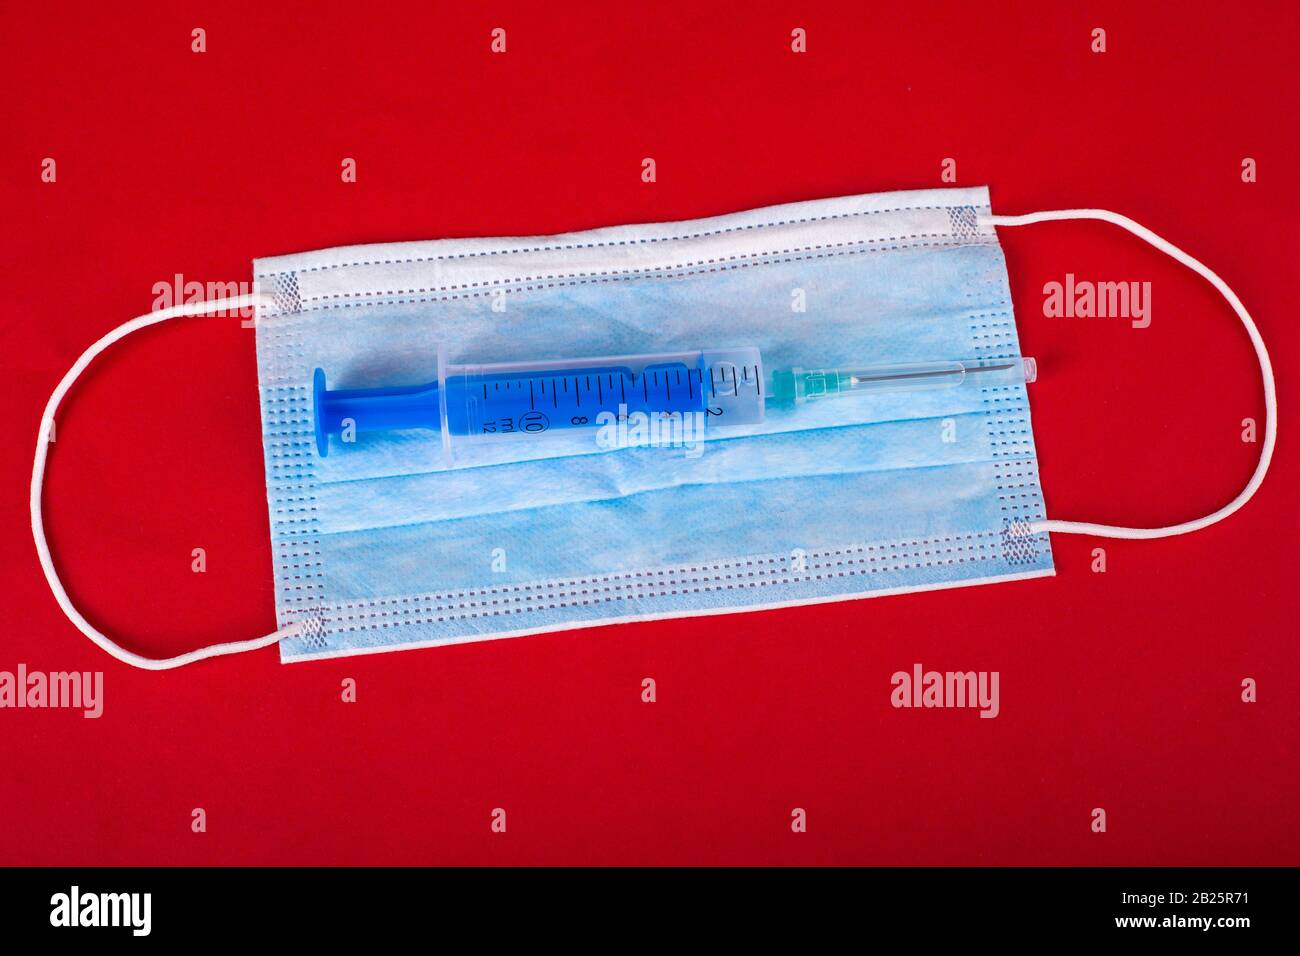 VORSICHTSMASSNAHMEN für die virale Infektion mit Coronavirus, Kovid-2019. Blaue medizinische Schutzmaske und Spritze mit einem Impfstoff auf rotem Hintergrund. Stockfoto